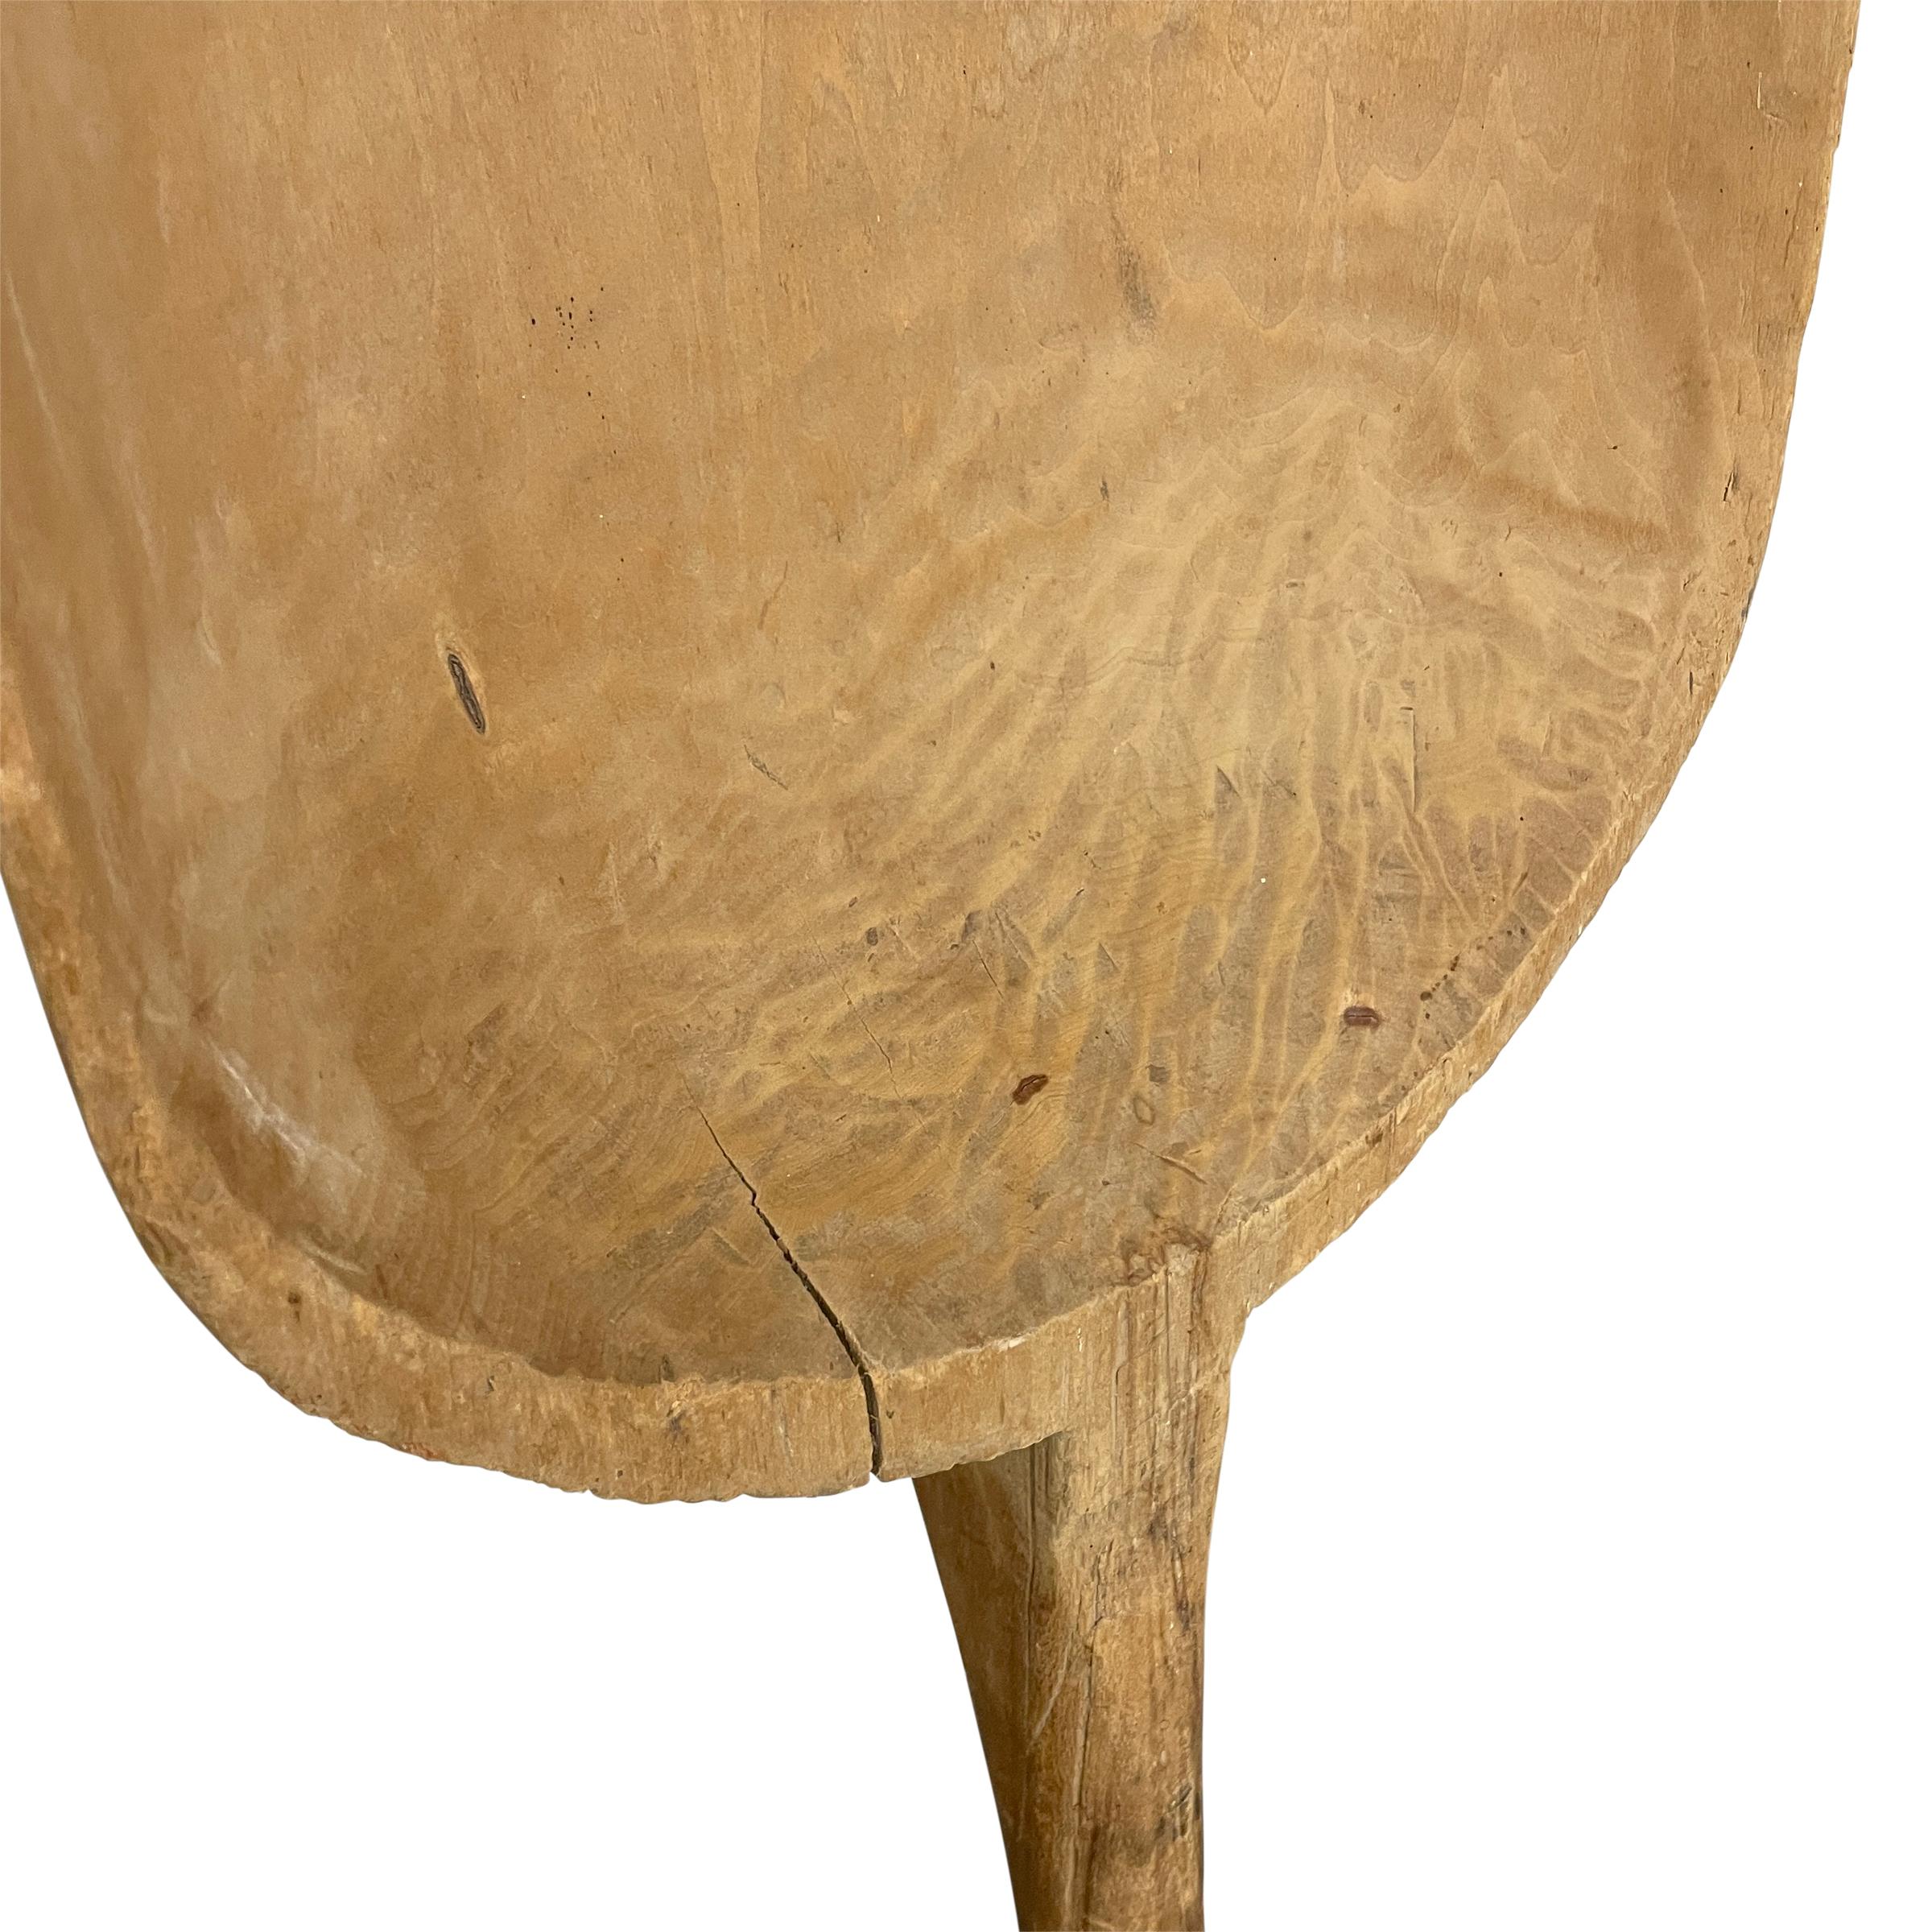 19th Century Wooden Grain Shovel on Custom Wall Mount For Sale 1